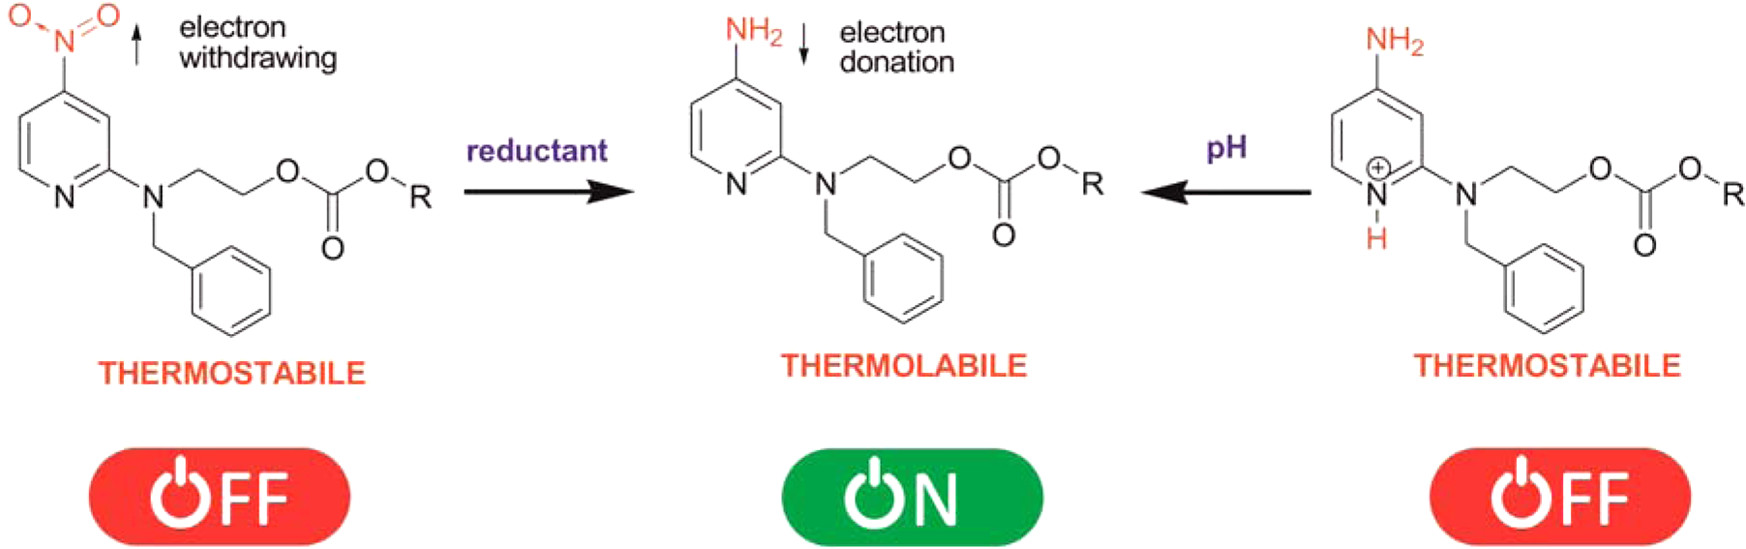 2 Modulowanie stabilności 2-pirydynylowych termolabilnych grup ochronnych grupy hydroksylowej za pomocą podejścia „przełącznika chemicznego” 